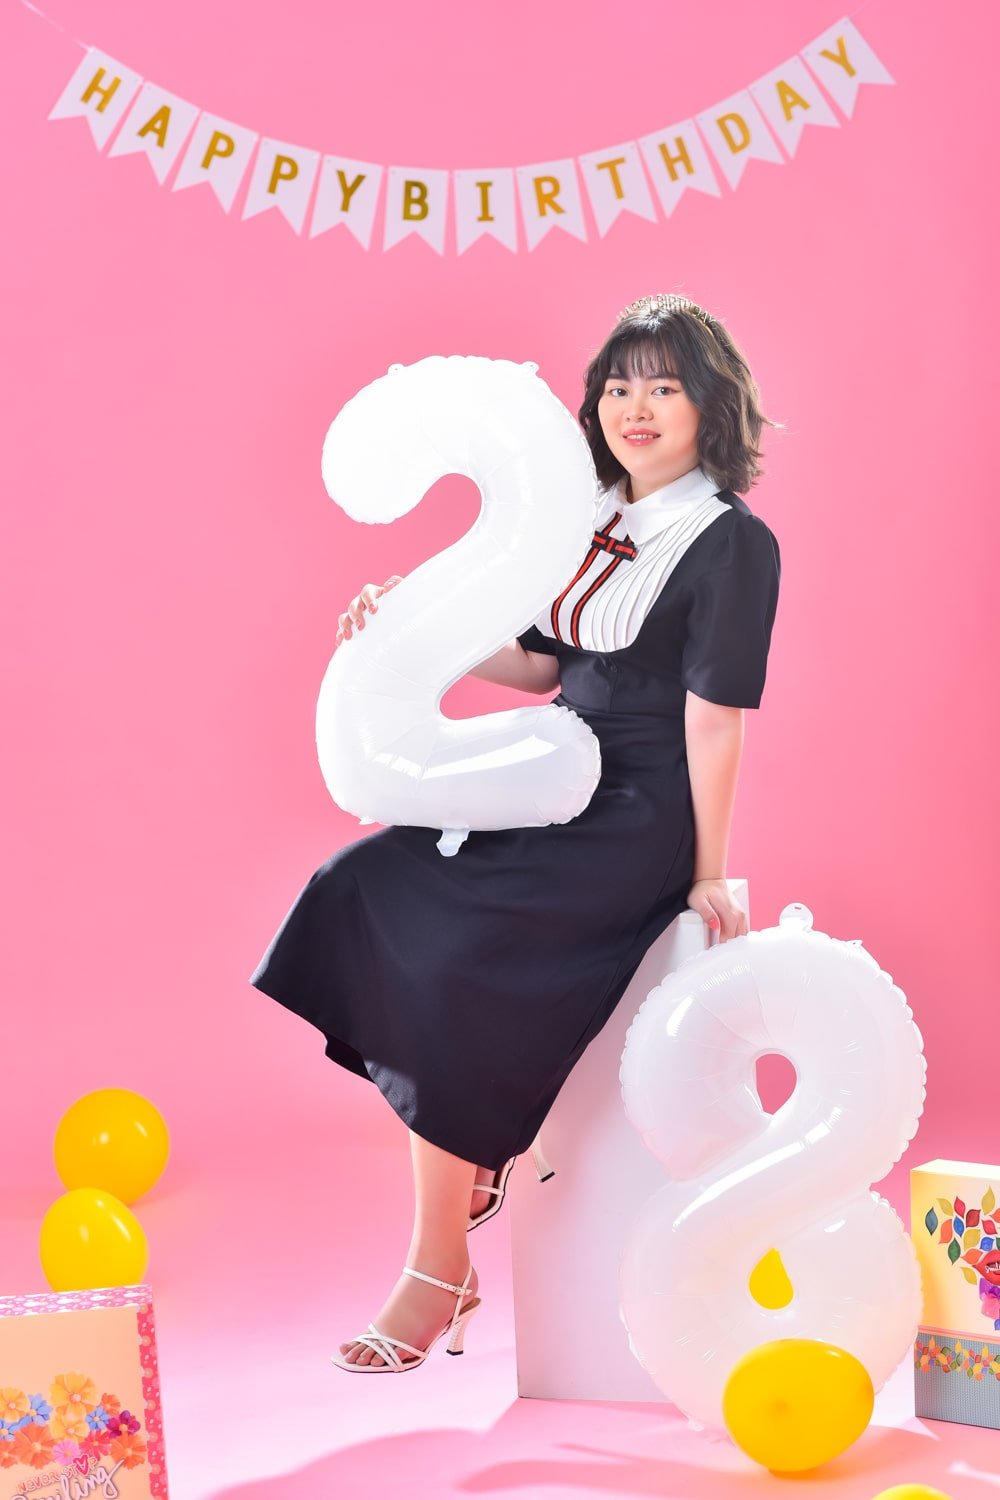 Anh Sinh Nhat  13 min - Hướng dẫn #9 cách tạo dáng chụp ảnh sinh nhật siêu cute - HThao Studio